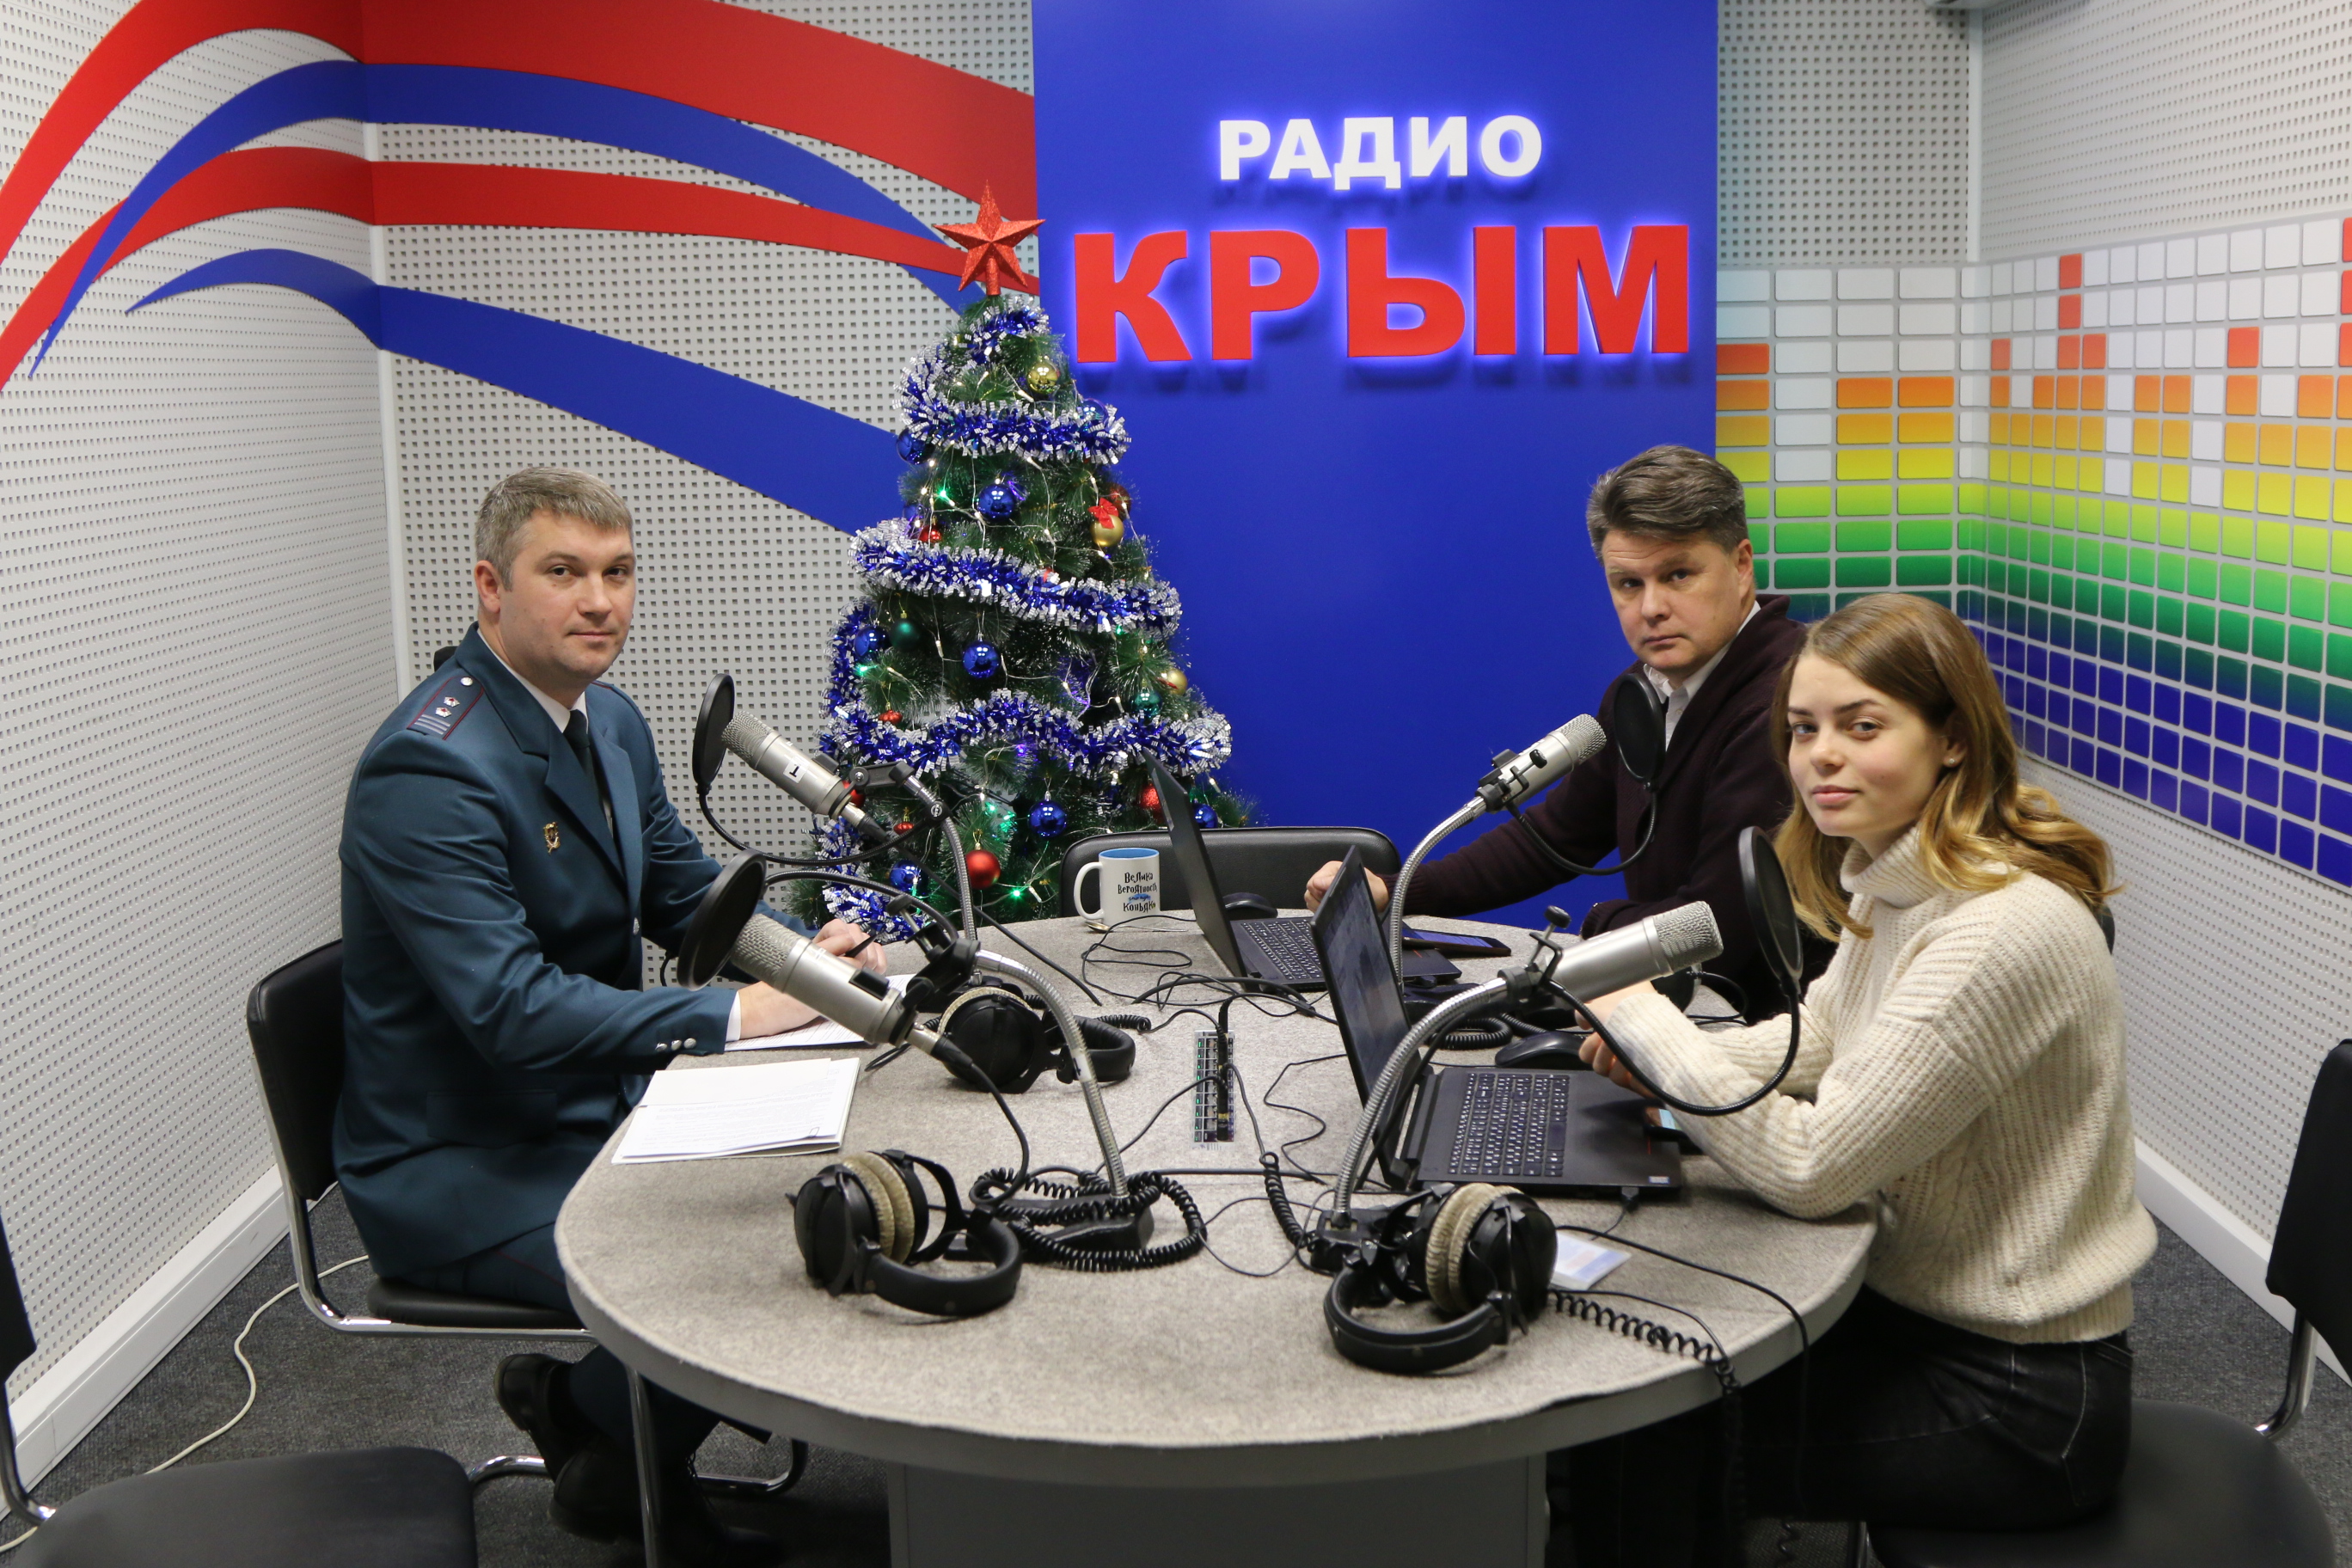 Радио Крым. Ведущие МВ радио. Радио Крым телефон прямого эфира. Сайт фнс крыма